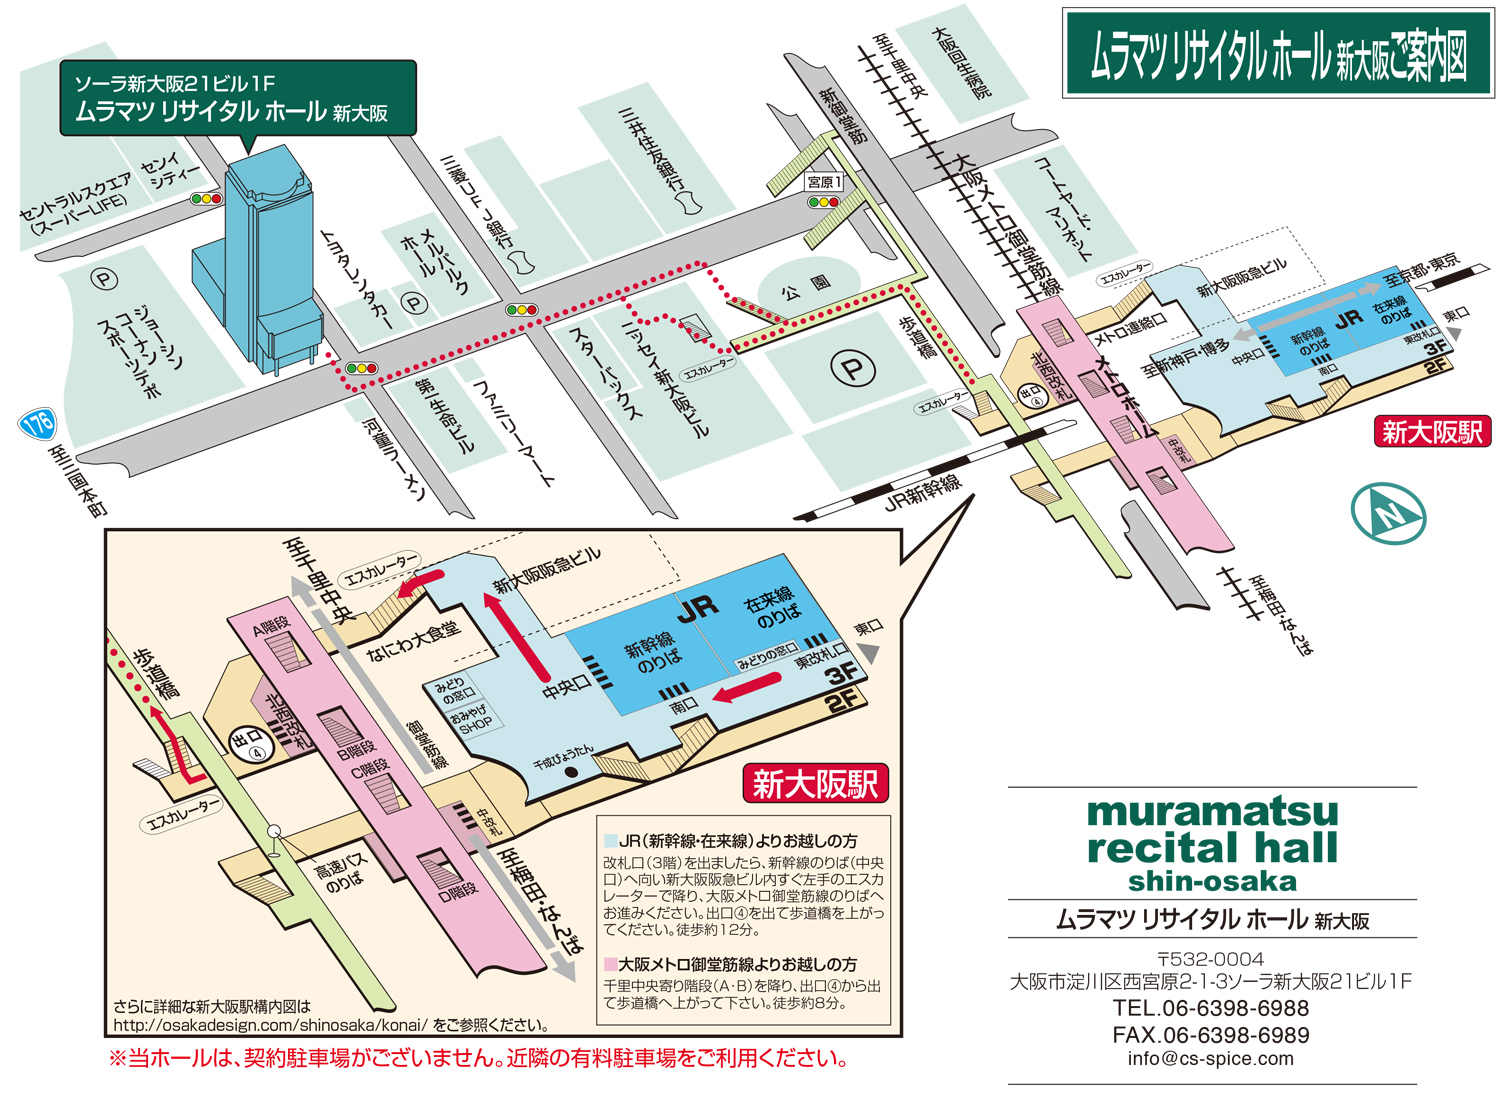 ムラマツ リサイタルホール 新大阪ご案内図